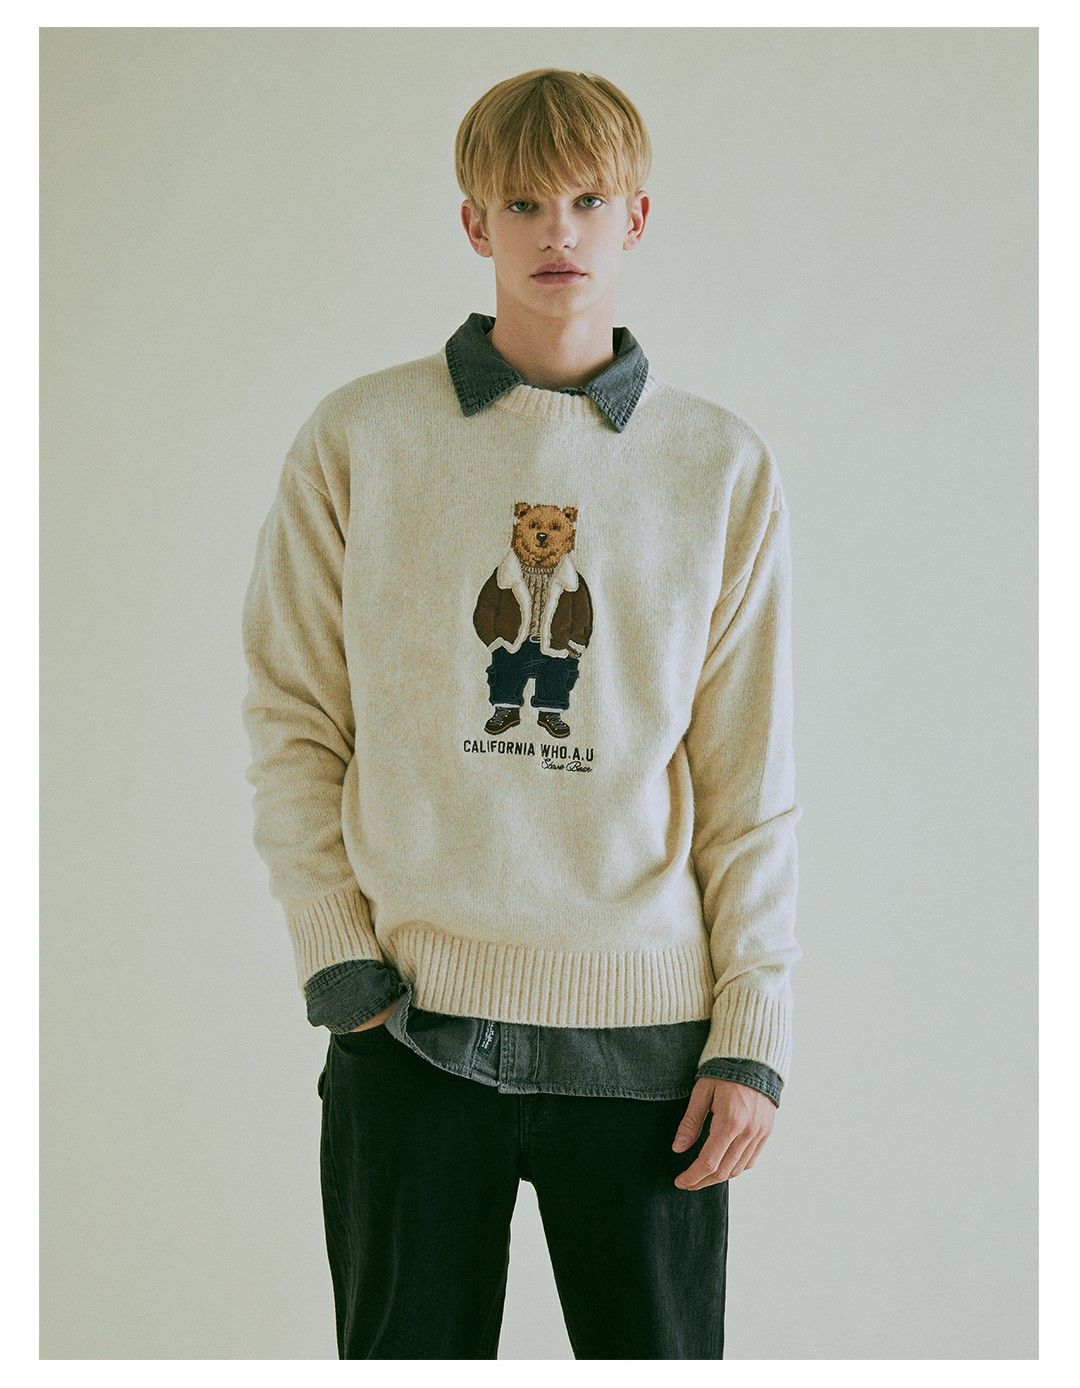  Áo Sweater WHO.A.U - Premium Dumble Steve Sweater - WHKAC4T02U 